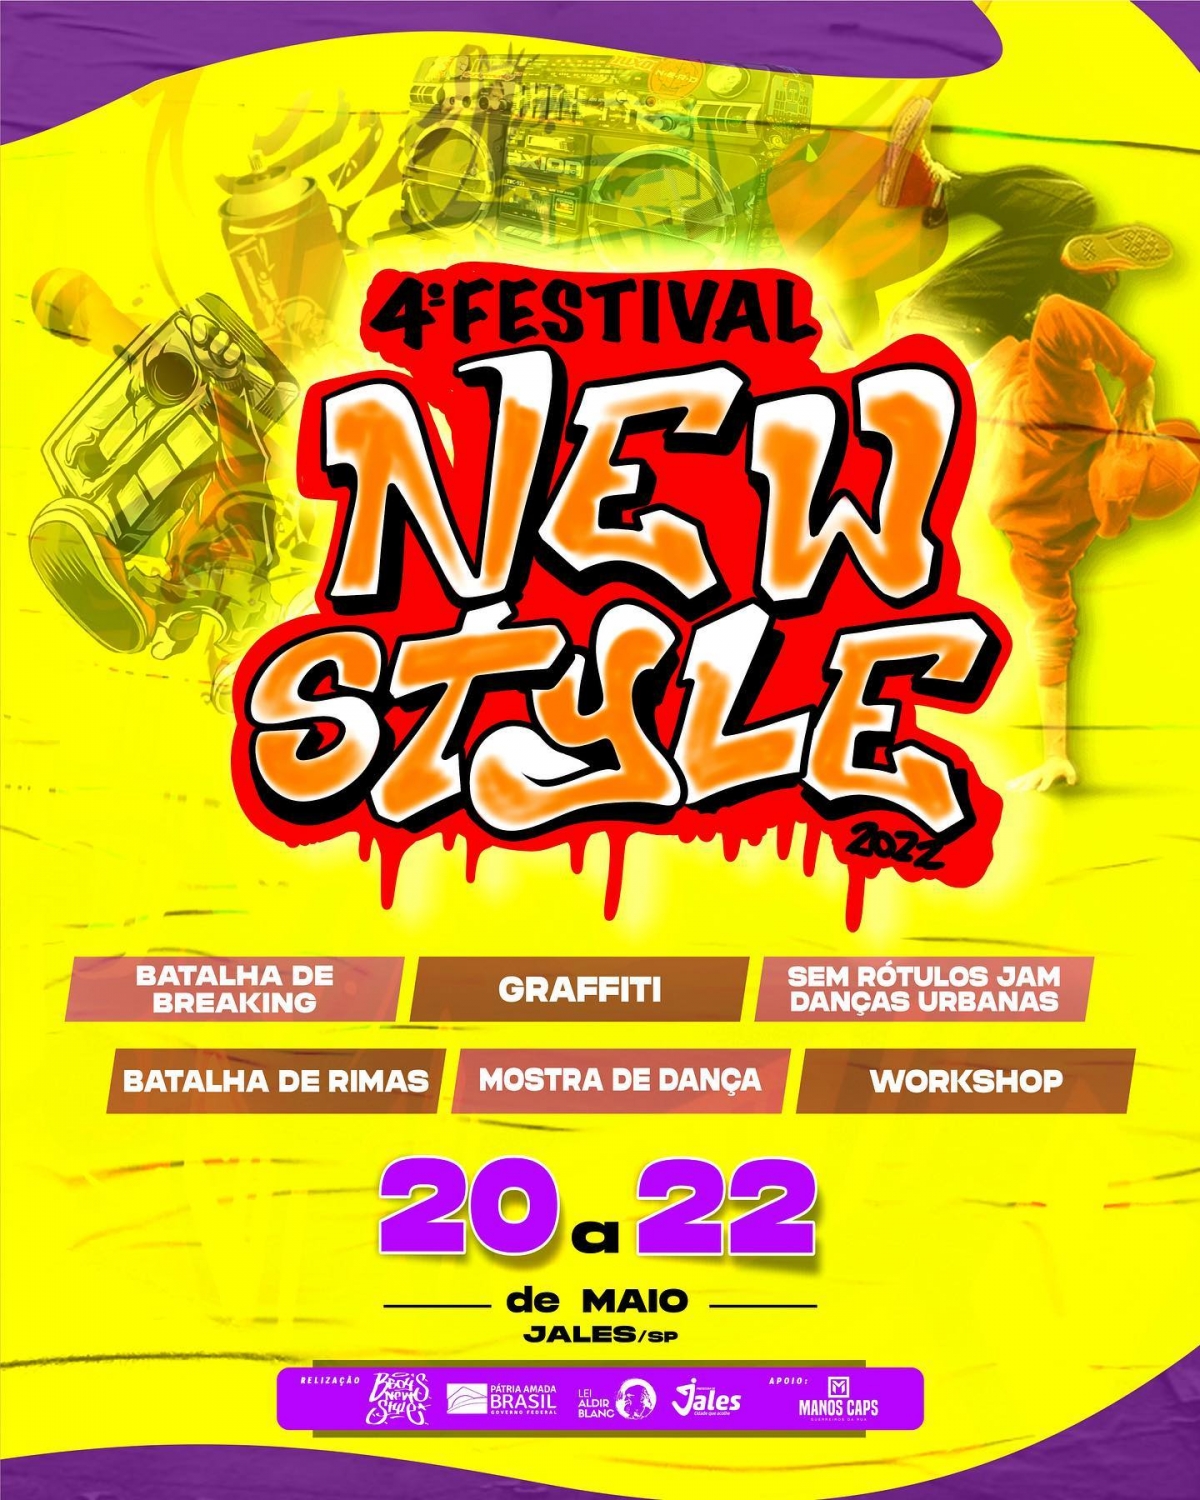 Jales - 4º Festival New Style será realizado de 20 a 22 de maio com muitas atrações para todos os públicos